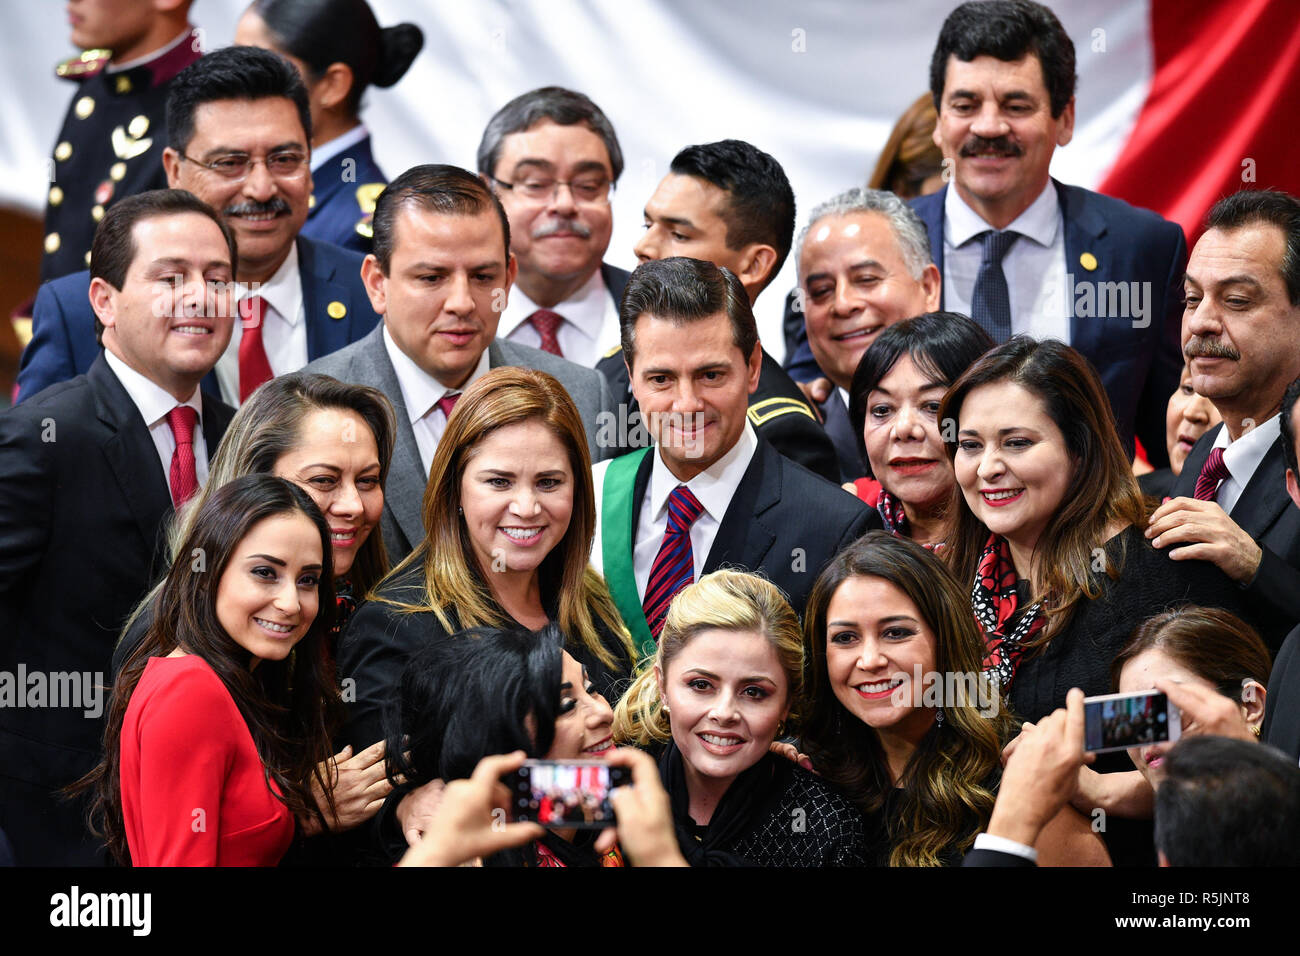 La ville de Mexico, Mexique. 1er décembre 2018. Le Président mexicain Enrique Pena sortant Nieto (C) pose pour une photo de groupe avec des partisans dans la ville de Mexico, capitale du Mexique, le 1er décembre 2018. L'inauguration du Président-élu mexicain Andres Manuel Lopez Obrador a eu lieu le samedi. Credit : Xin Yuewei/Xinhua/Alamy Live News Banque D'Images